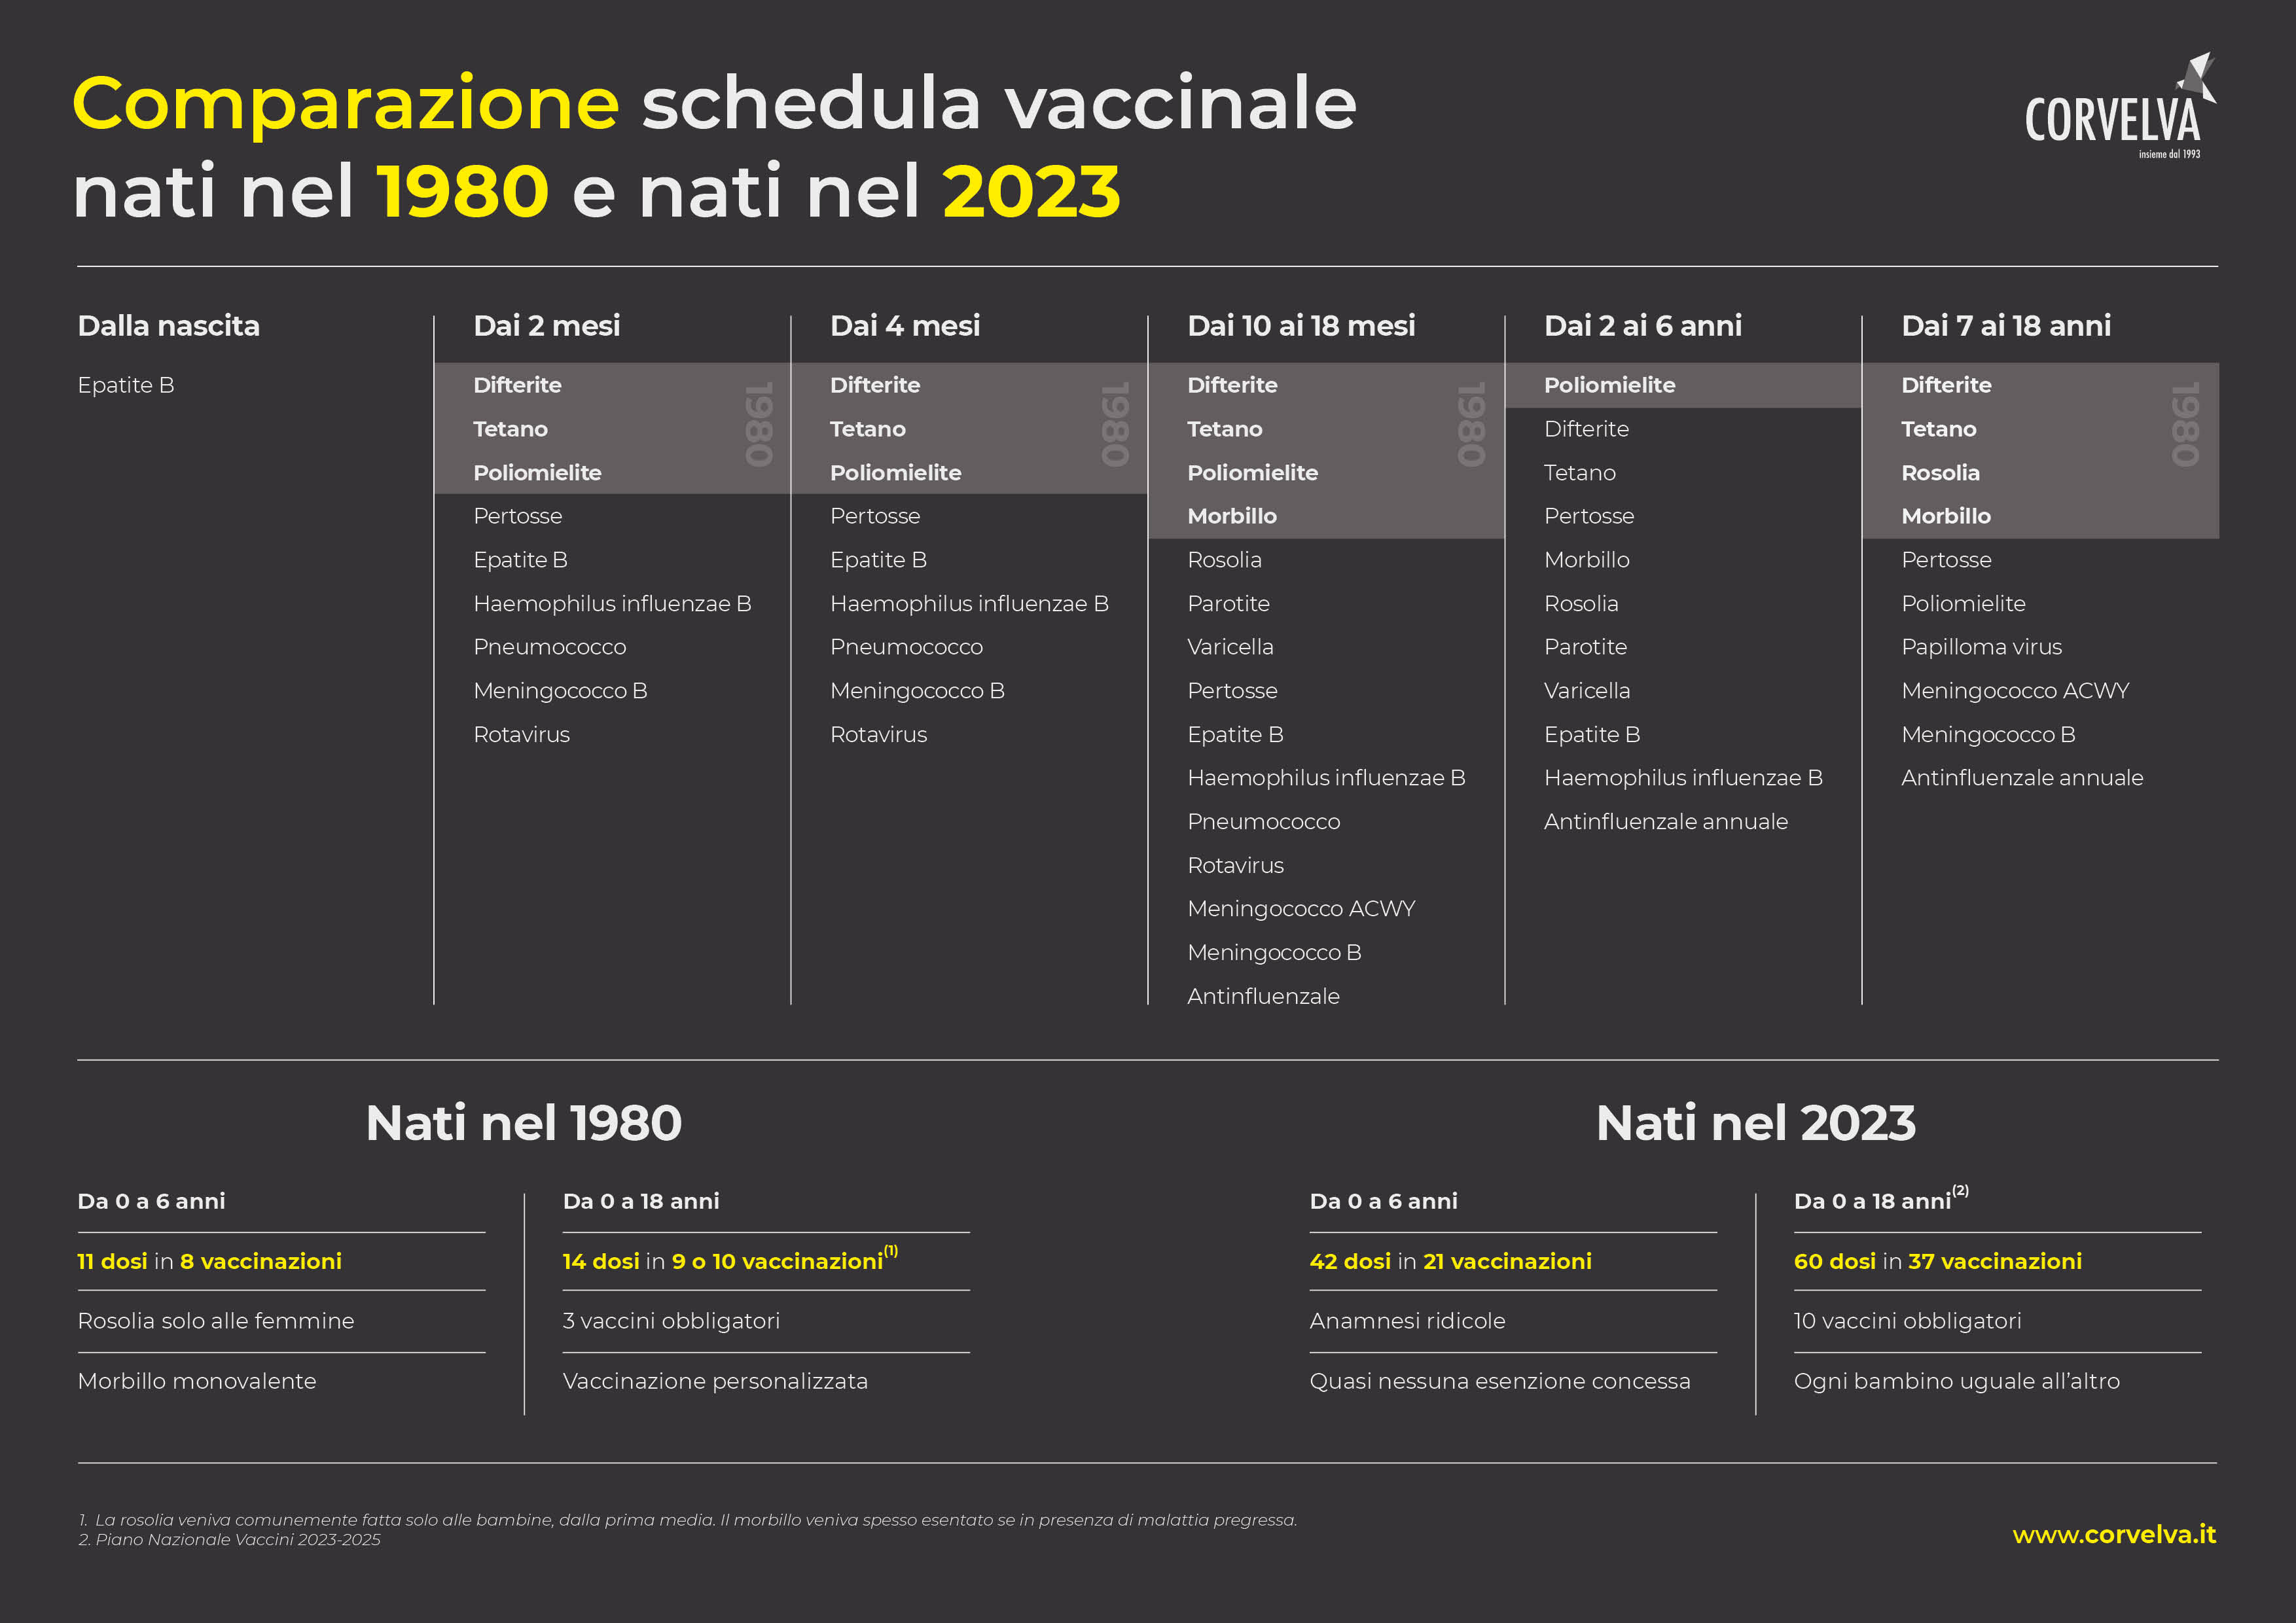 השוואה בין לוחות חיסונים ילידי 1980 וילידי 2023